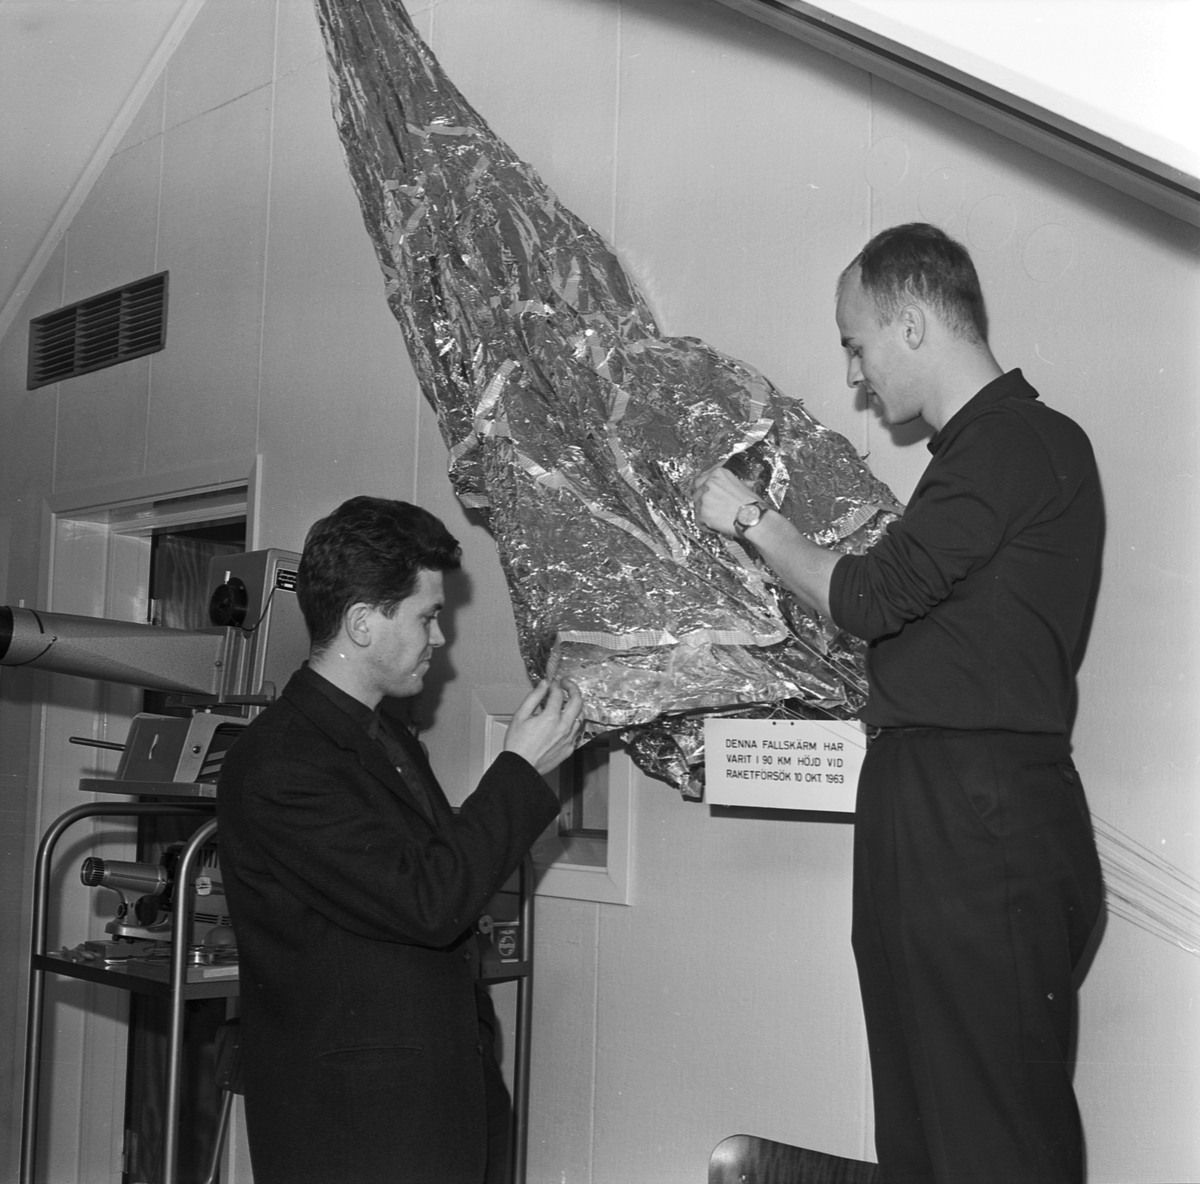 Jonosfärobservatoriet, jonosfärforskarna planerar nya prov från norsk raketbas, Uppsala 1964